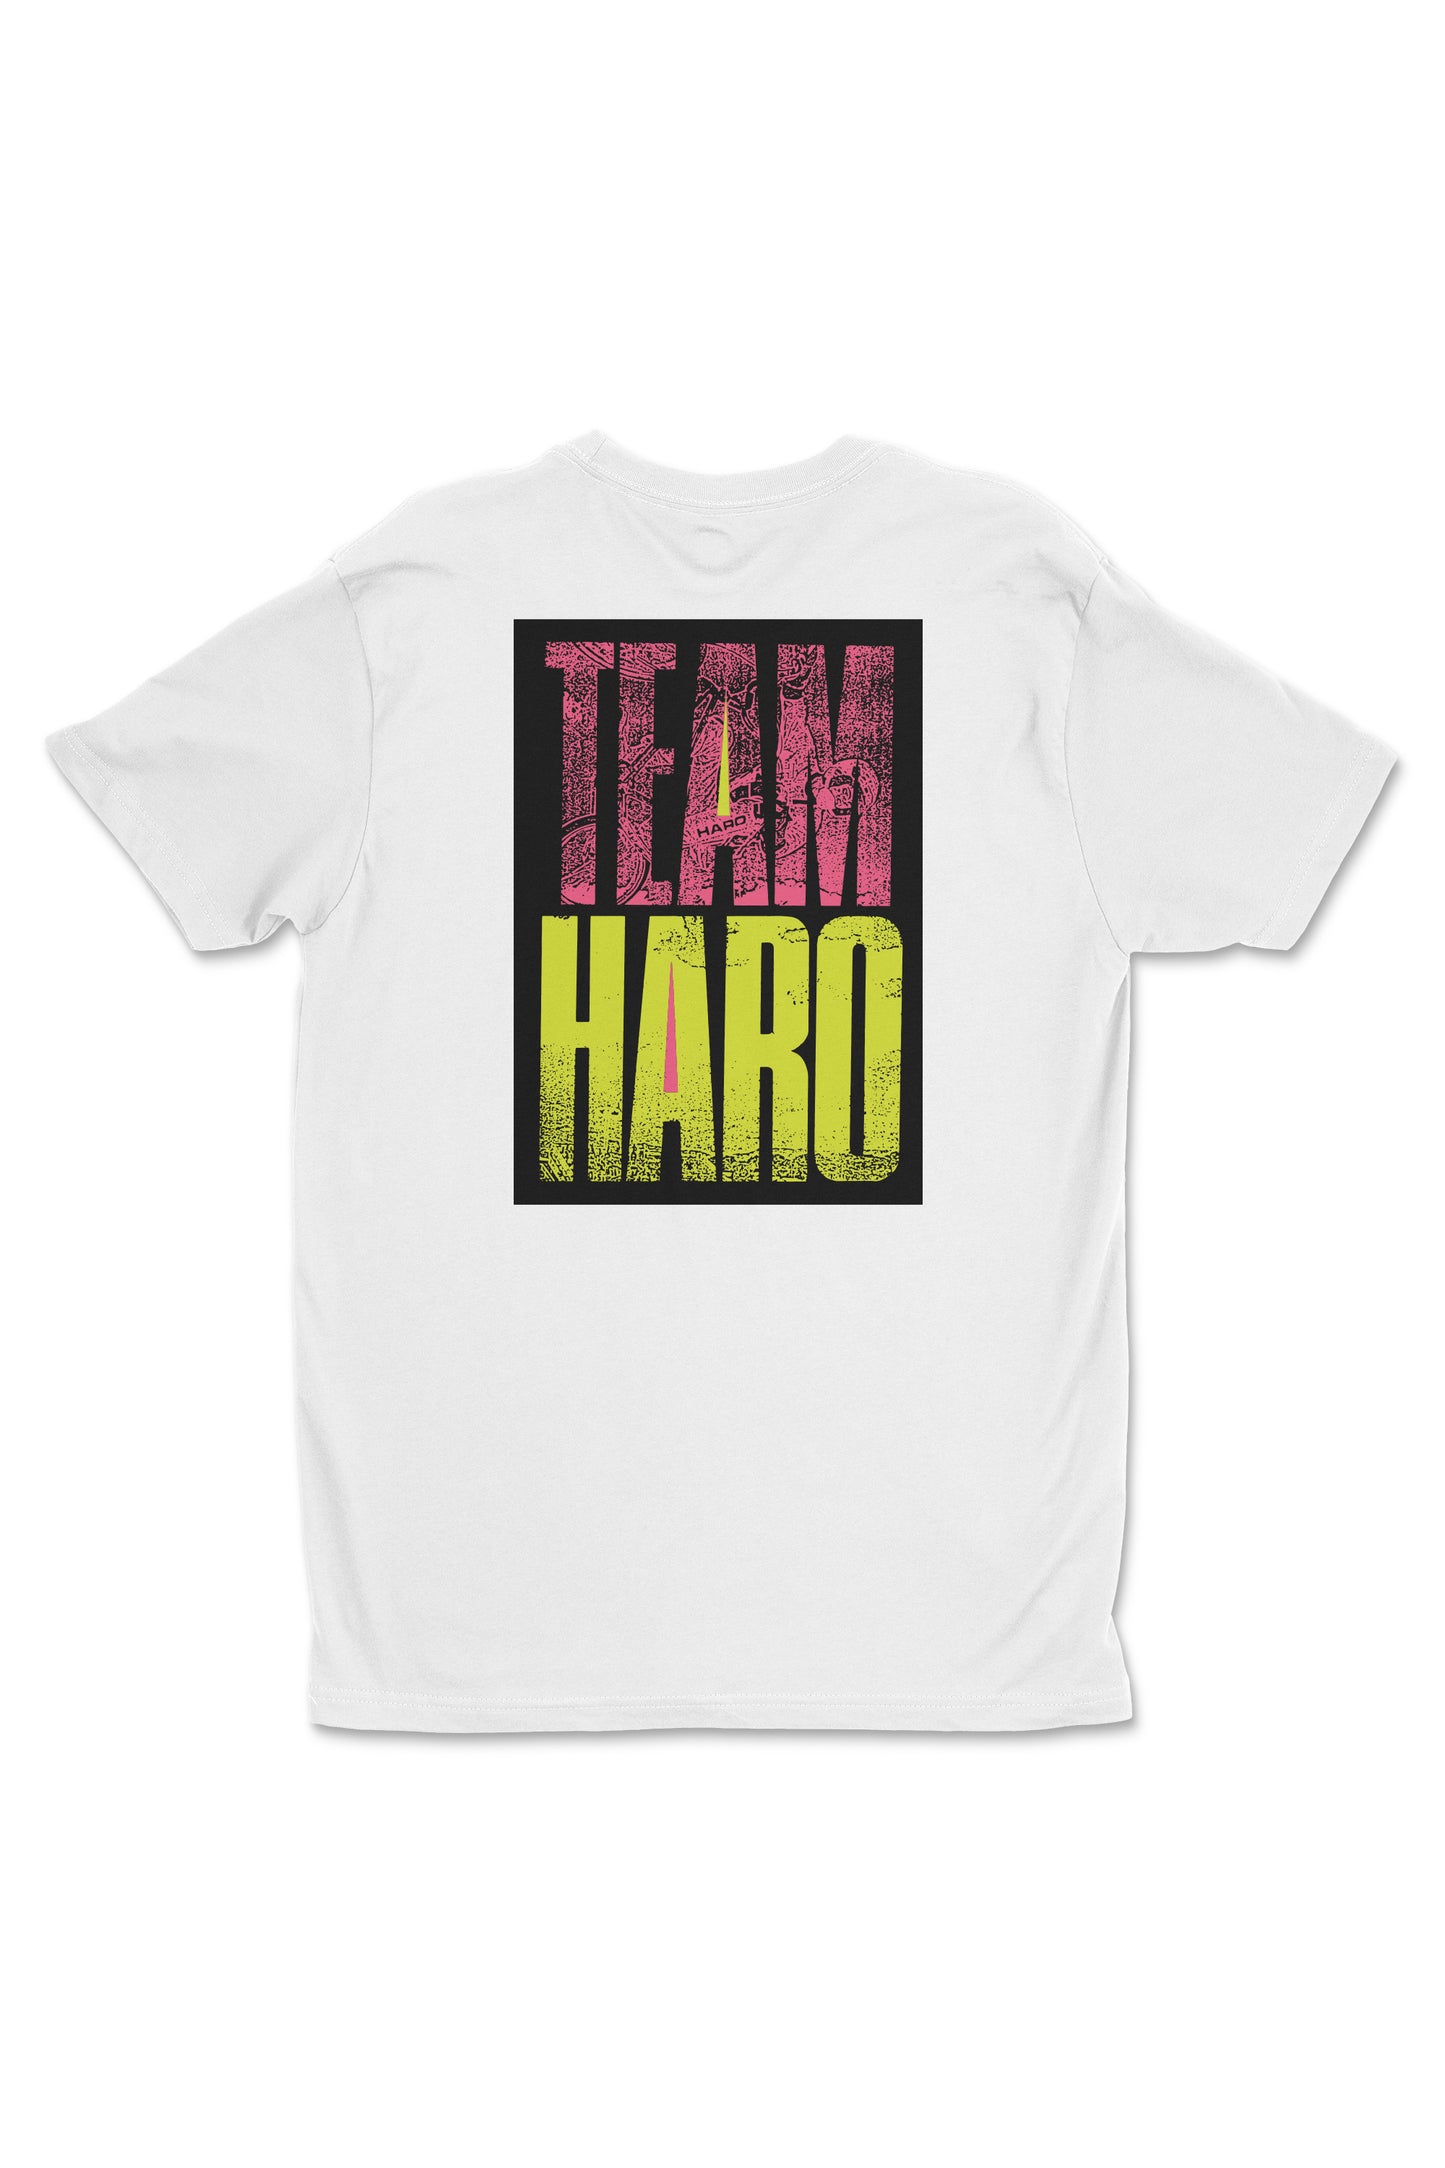 Team Haro Shirt